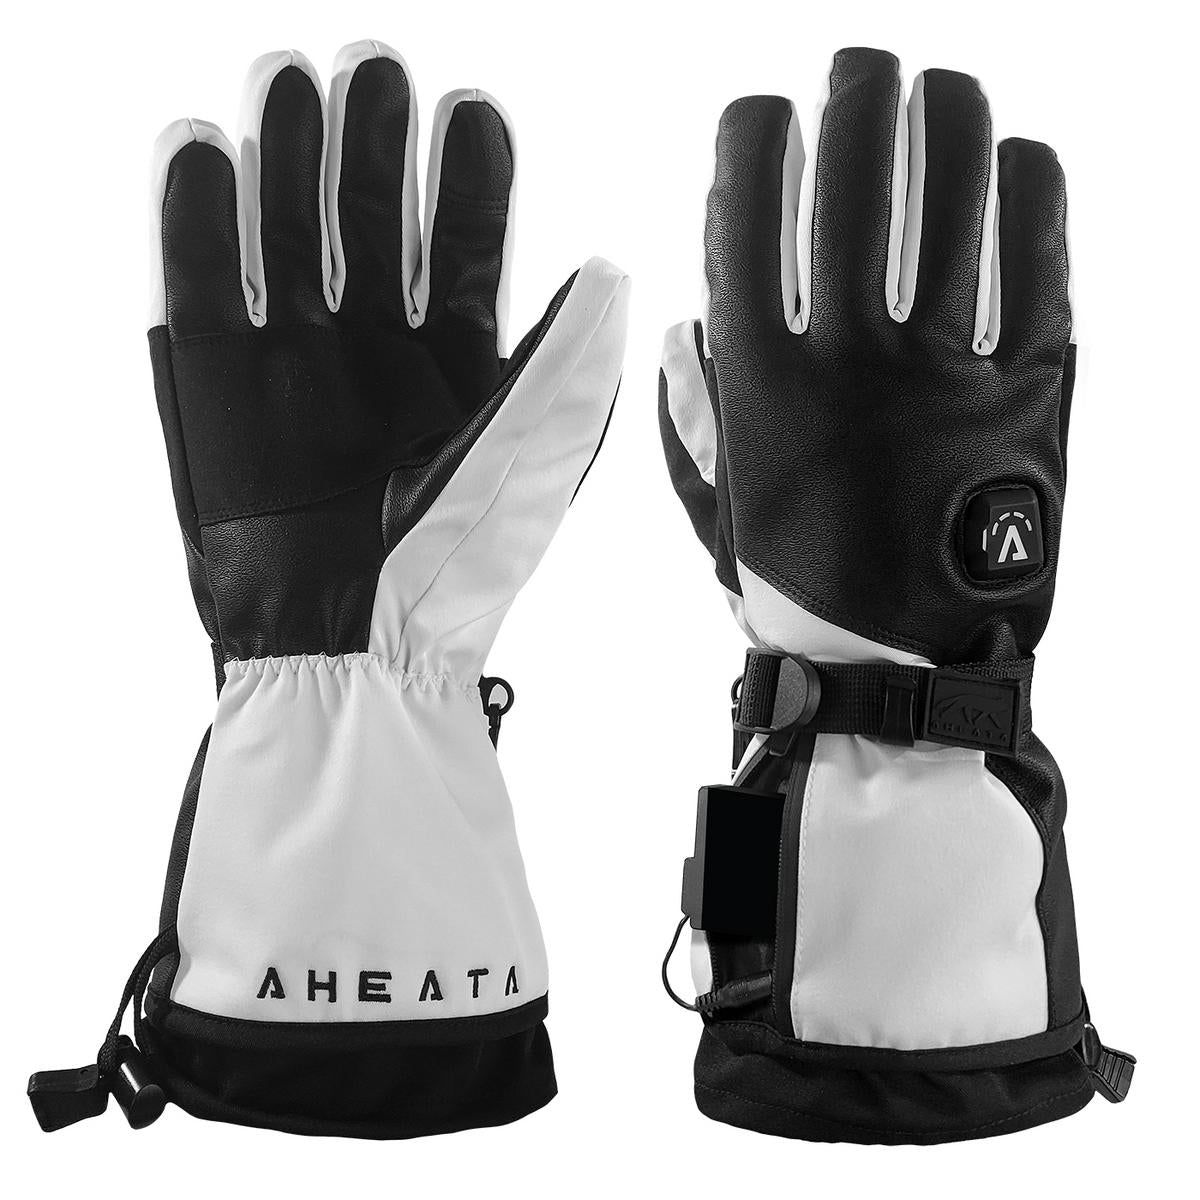 Aheata 7V Battery Heated Flex Textile Gloves - Heated